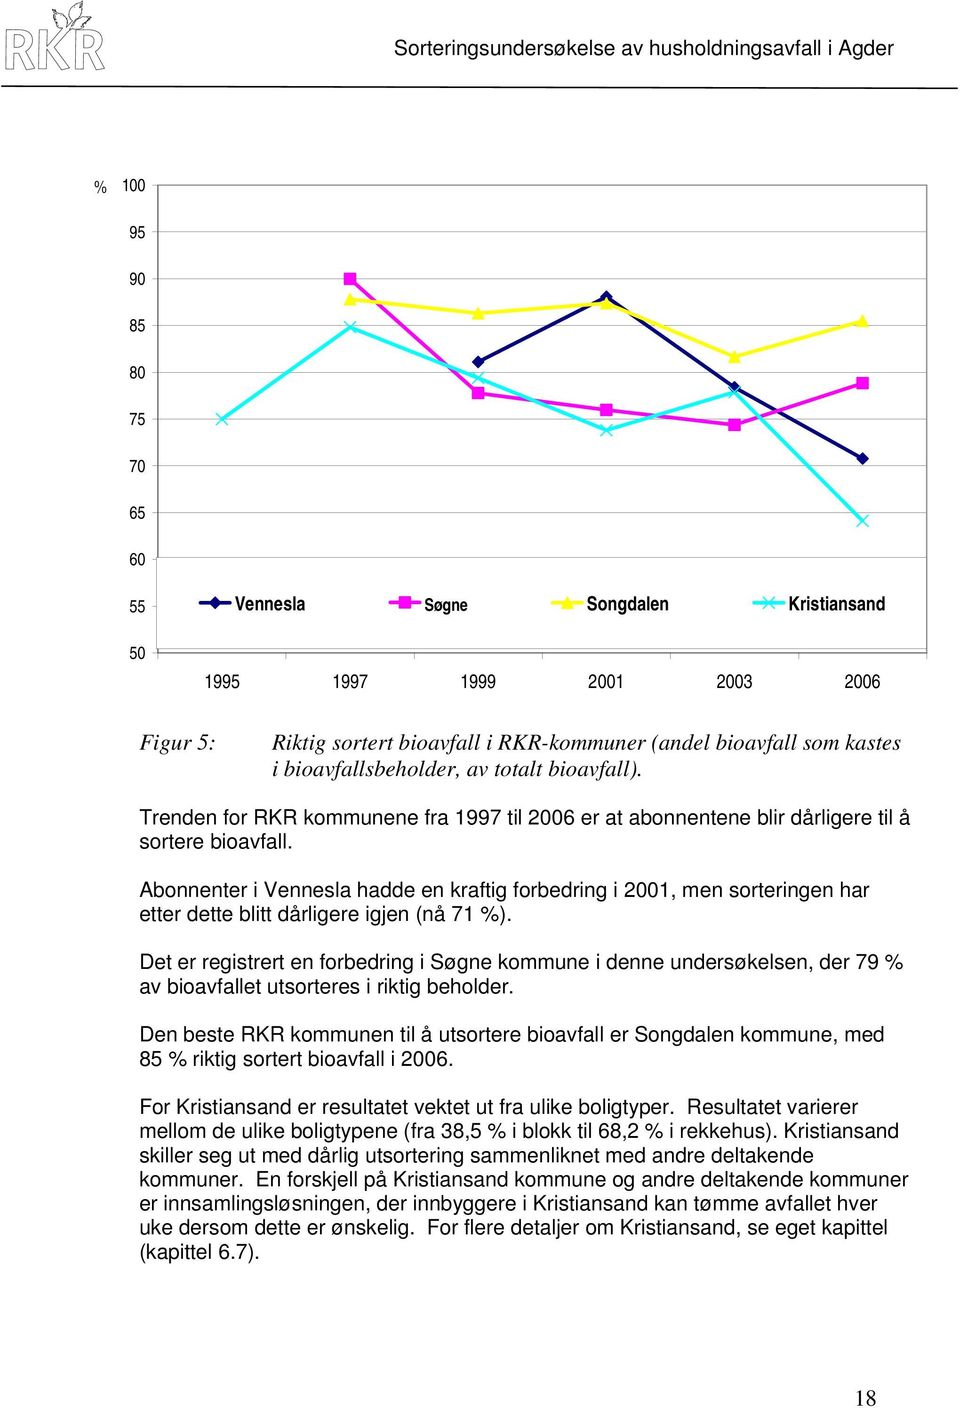 Abonnenter i Vennesla hadde en kraftig forbedring i 2001, men sorteringen har etter dette blitt dårligere igjen (nå 71 %).